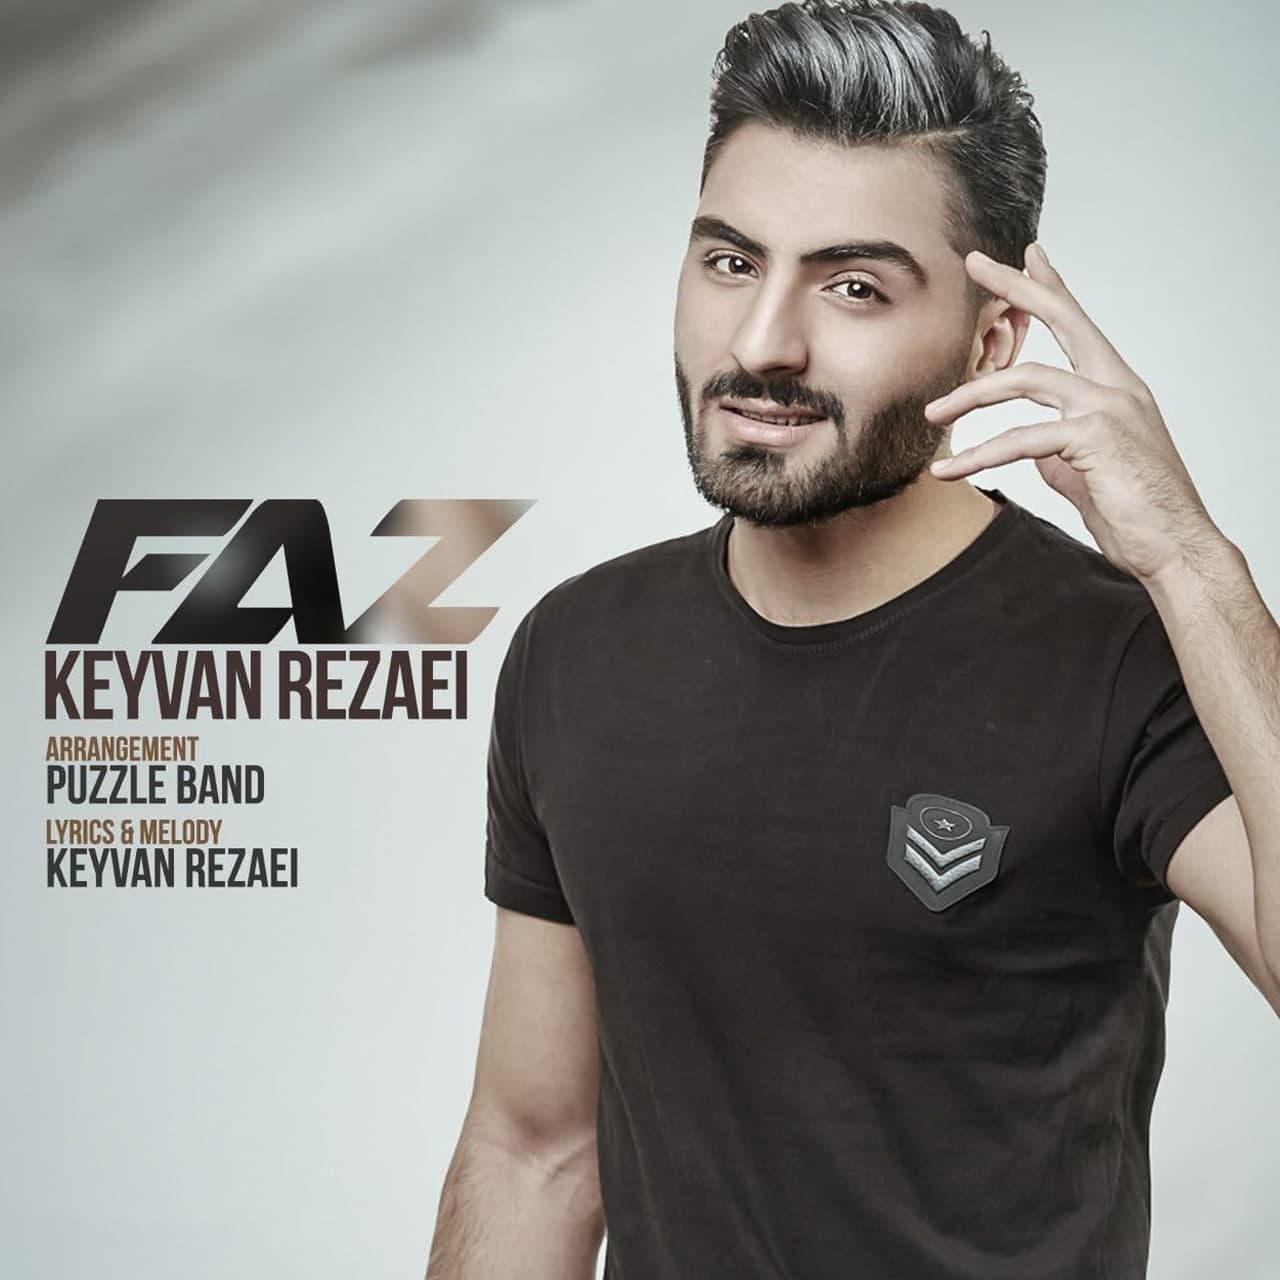  دانلود آهنگ جدید کیوان رضایی - فاز | Download New Music By Keyvan Rezaei - Faz